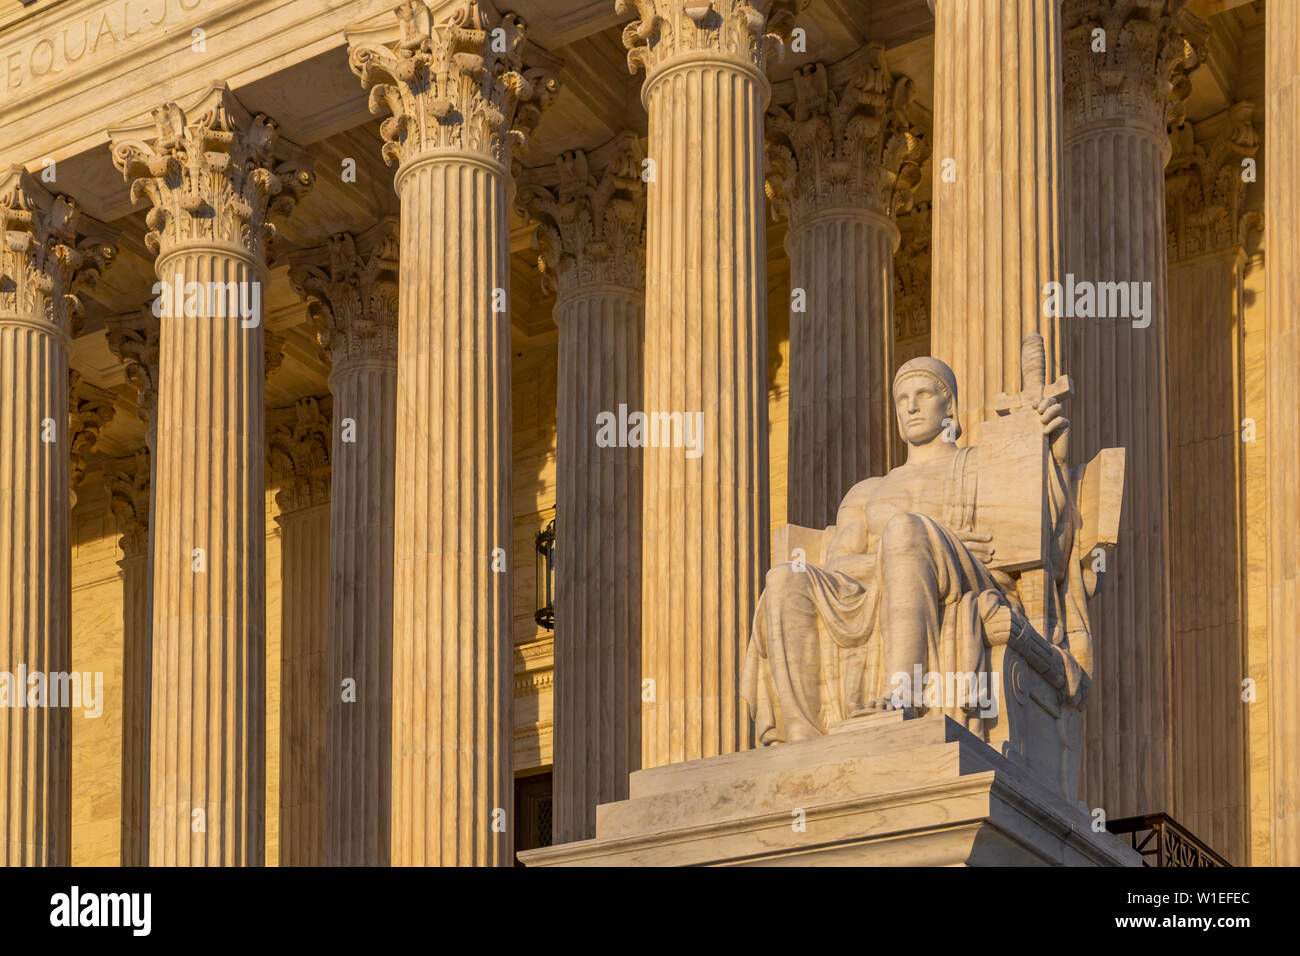 Der Oberste Gerichtshof der Vereinigten Staaten bei Sonnenuntergang, Washington D.C., Vereinigte Staaten von Amerika, Nordamerika Stockfoto